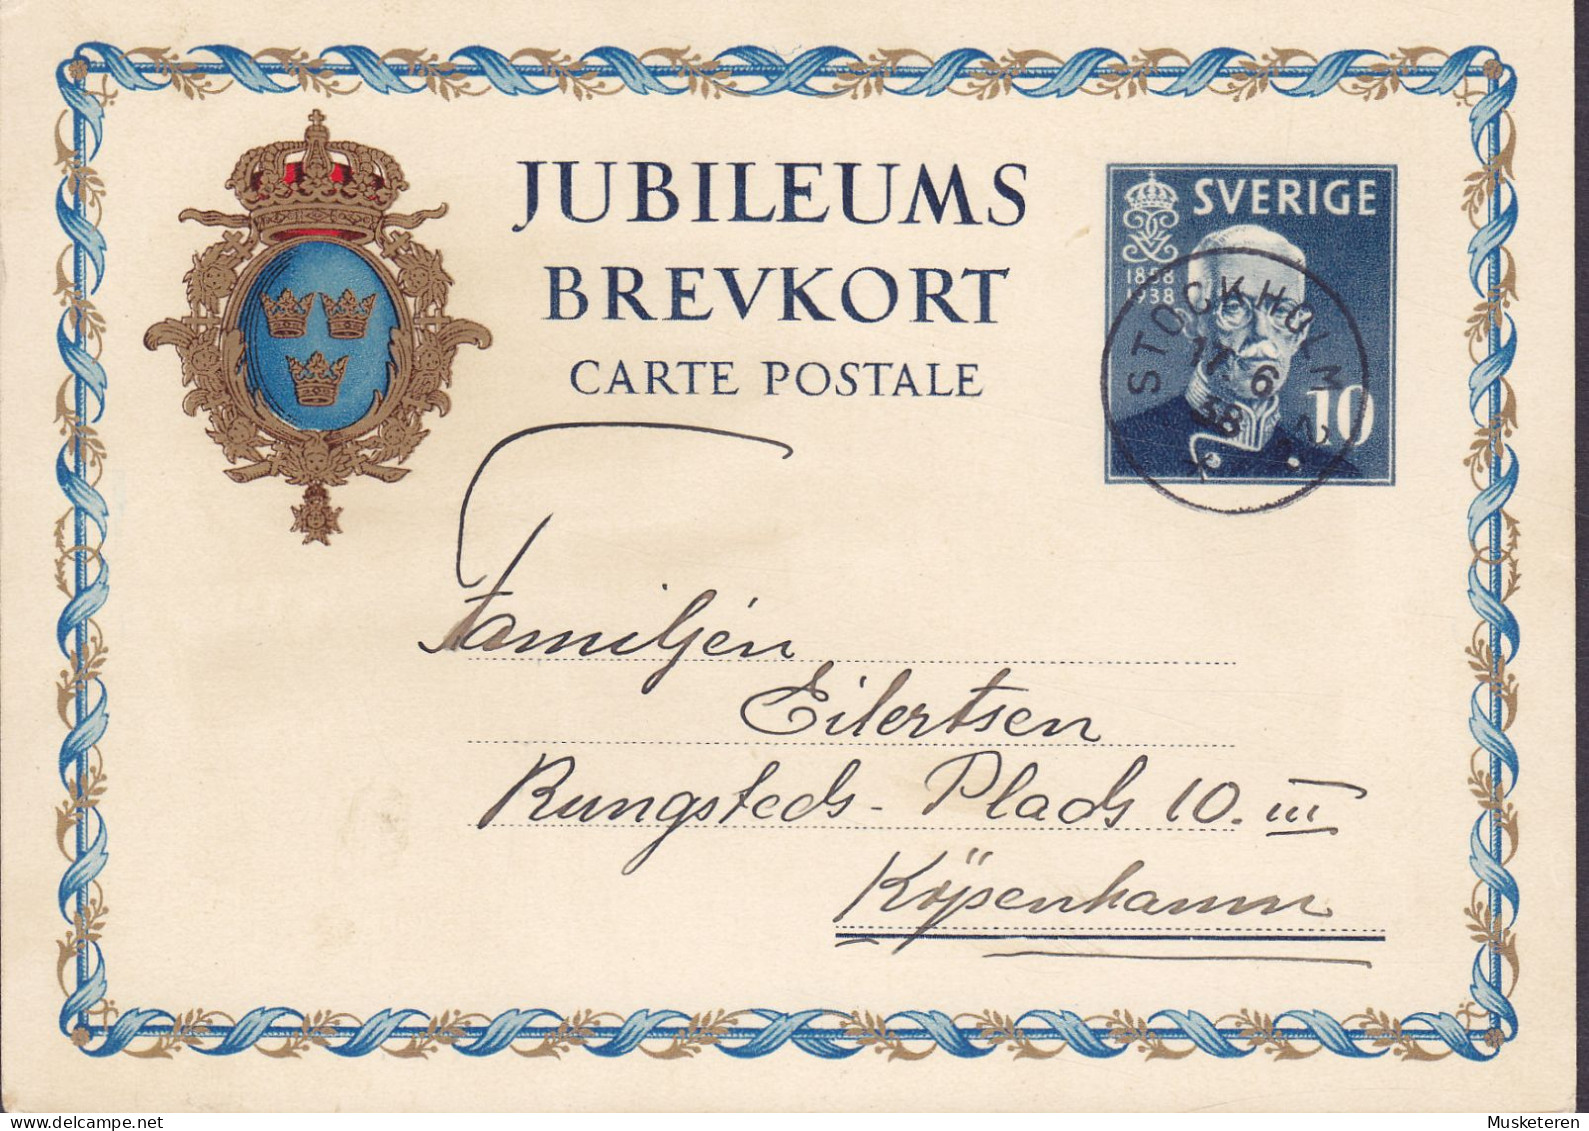 Sweden Postal Stationery Ganzsache Entier 10 Ø Jubileums Brevkort 1858-1938 STOCKHOLM 1938 KØBENHAVN Denmark - Ganzsachen